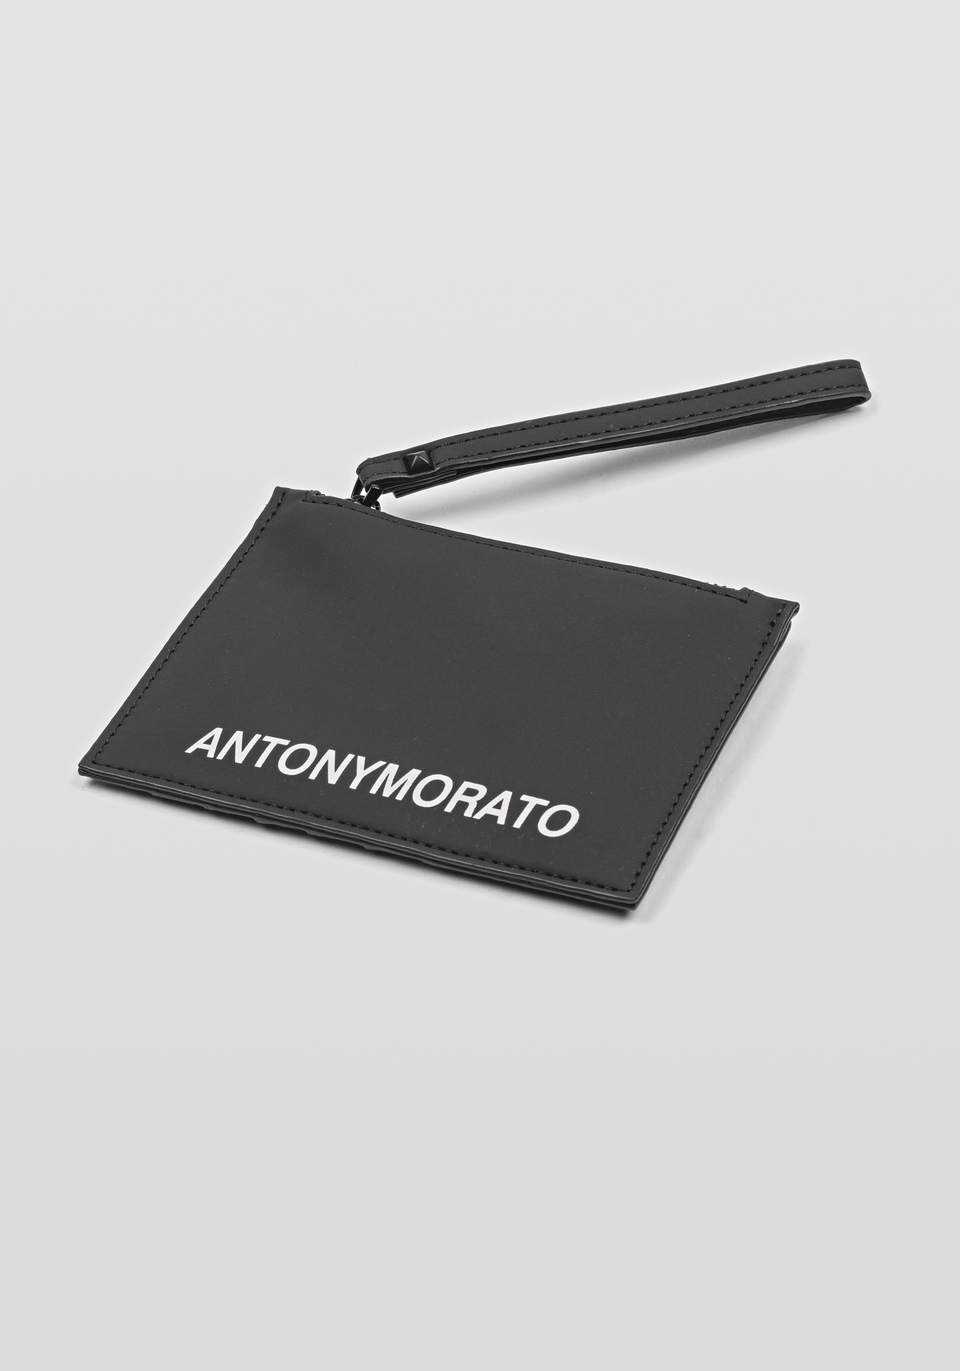 PORTACARTE IN TESSUTO GOMMATO CON MANICOTTO - Antony Morato Online Shop